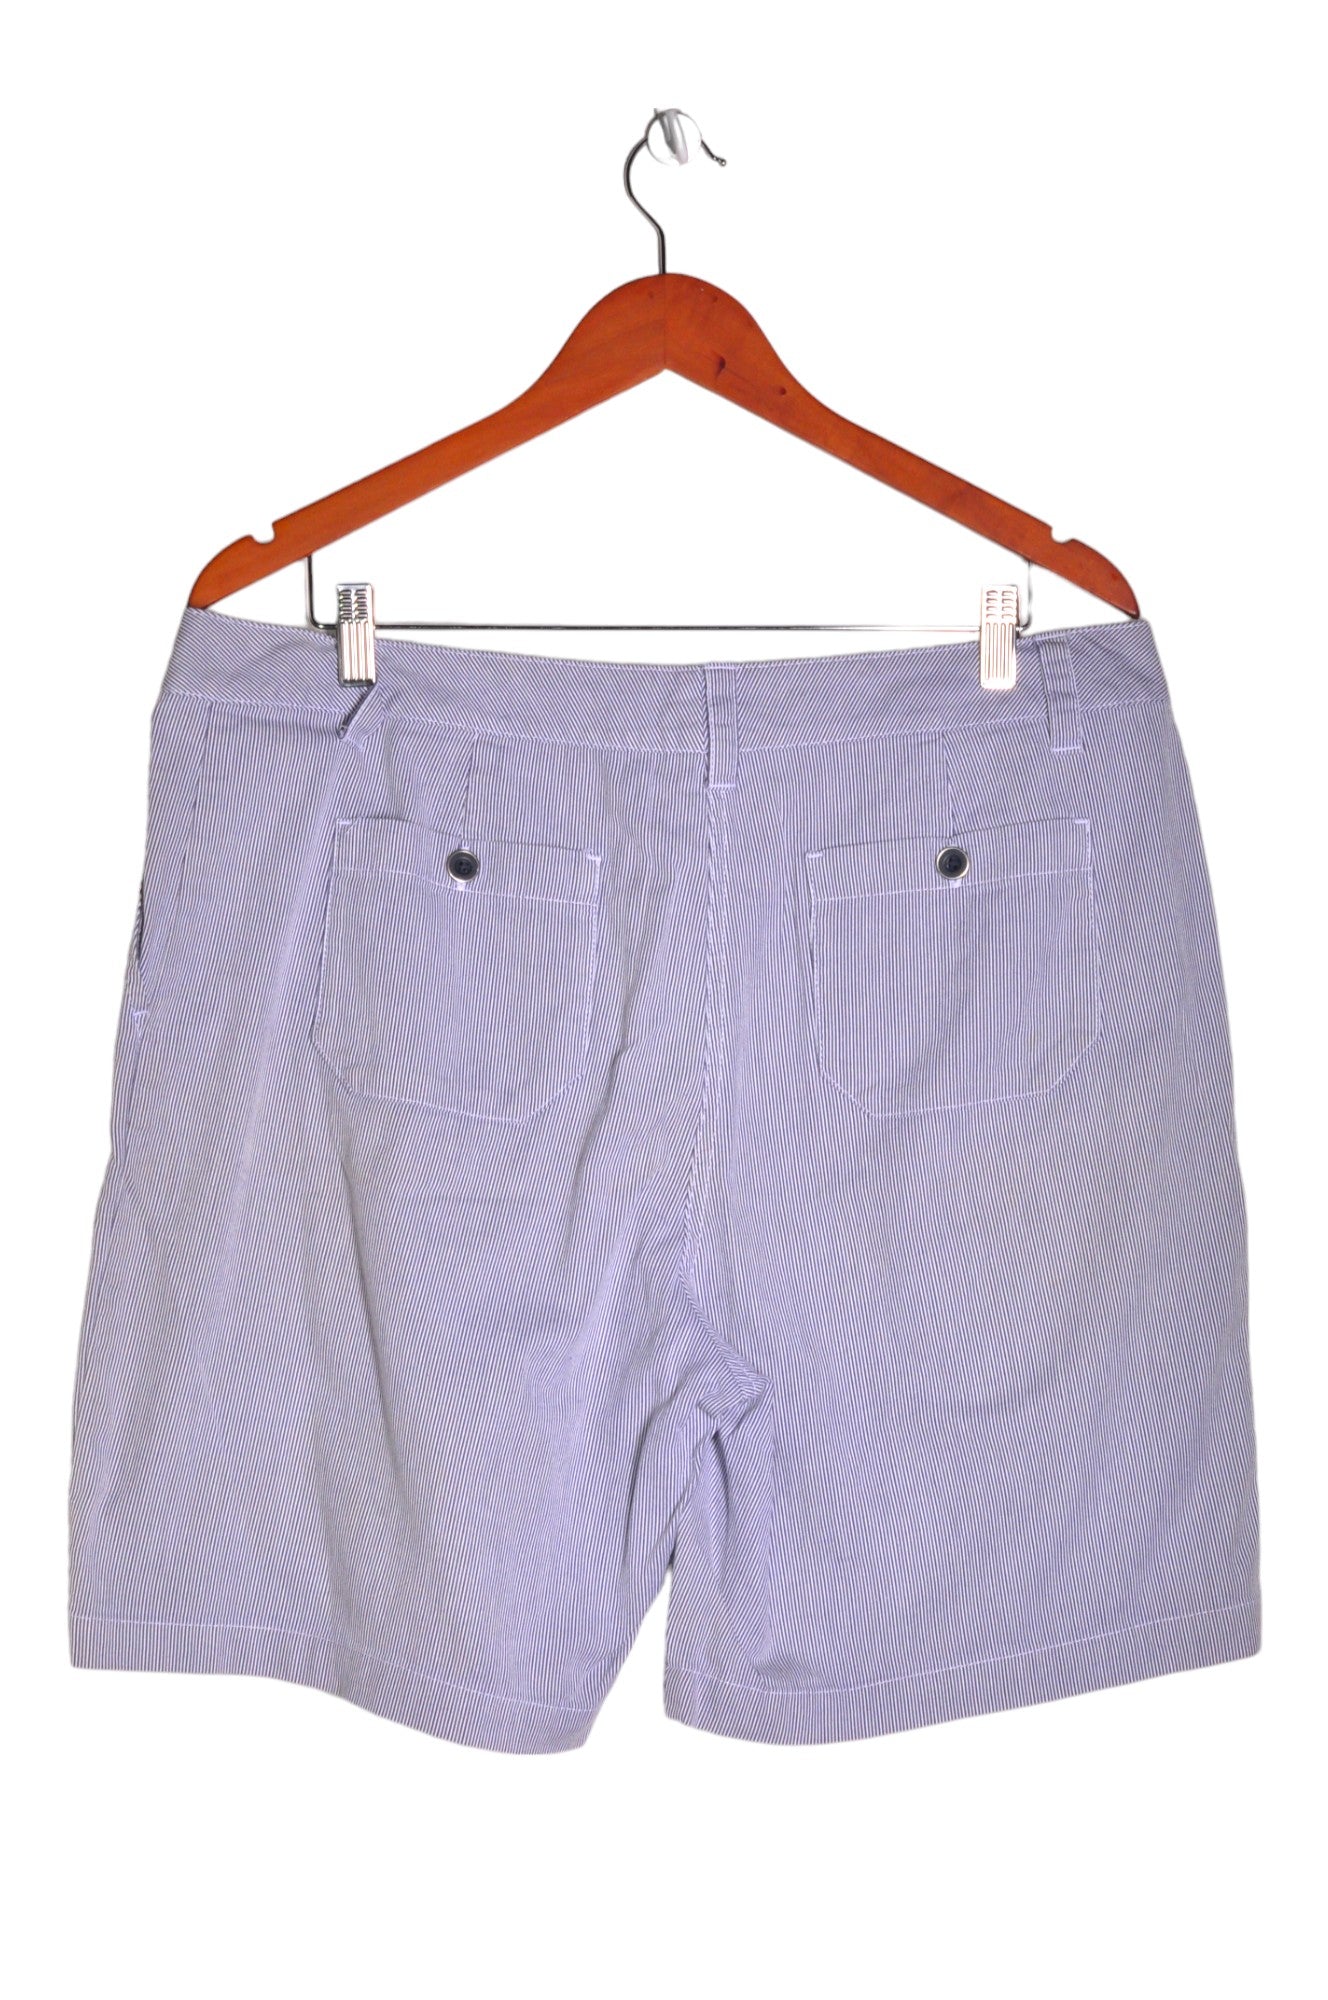 VAN HEUSEN Men Classic Shorts Regular fit in White - Size 14 | 17.19 $ KOOP